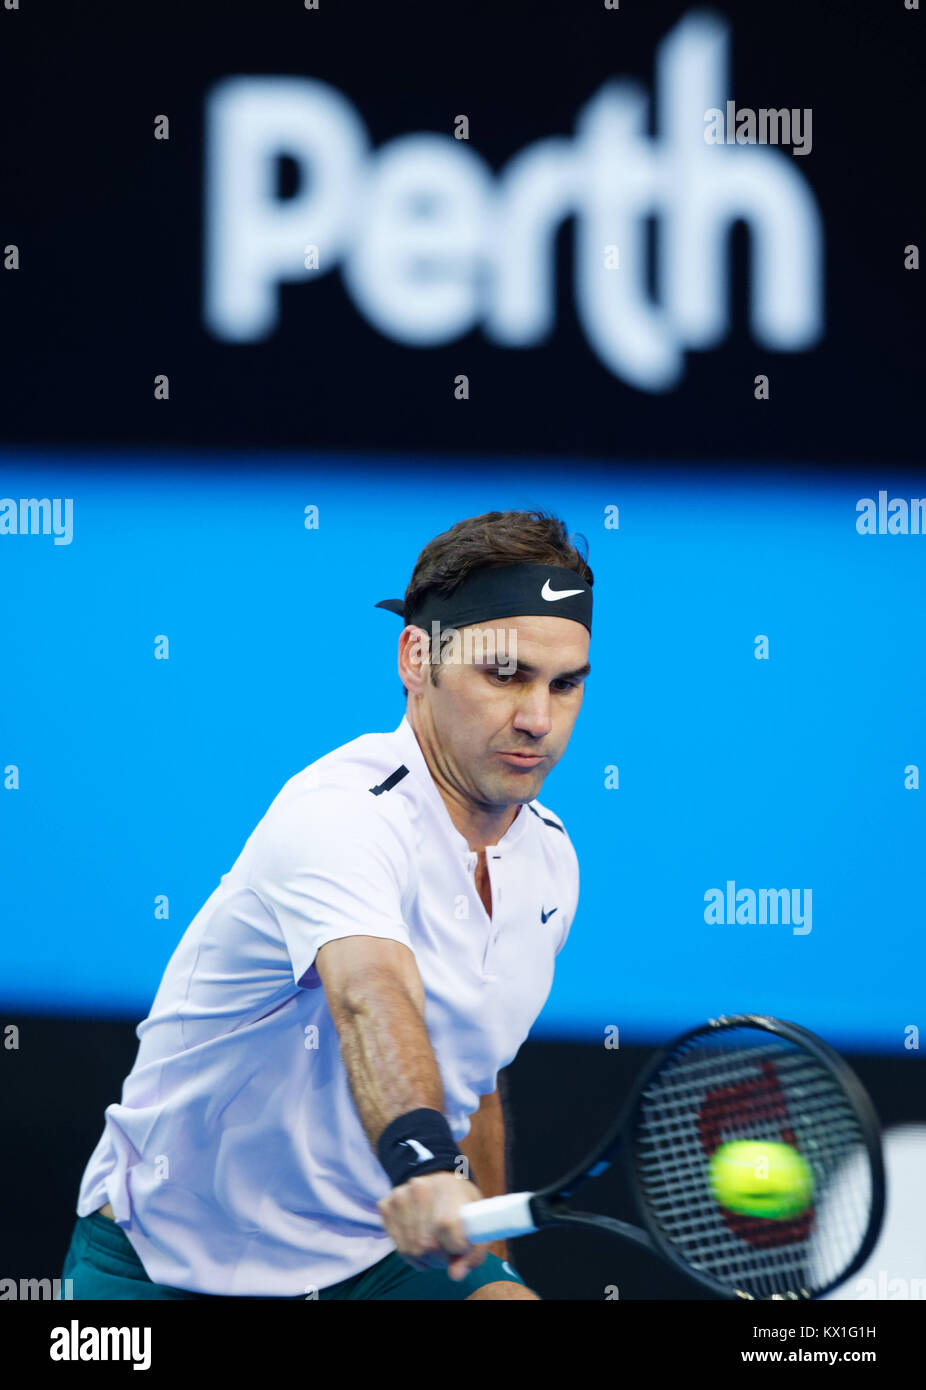 Perth, Australia. El 6 de enero, 2017. Roger Federer de Suiza devuelve el balón al oponente Alexander Zverev de Alemania en la final de la Copa Hopman en Perth, Australia, Januray 6, 2018. Crédito: Trevor Collens/Alamy Live News Foto de stock